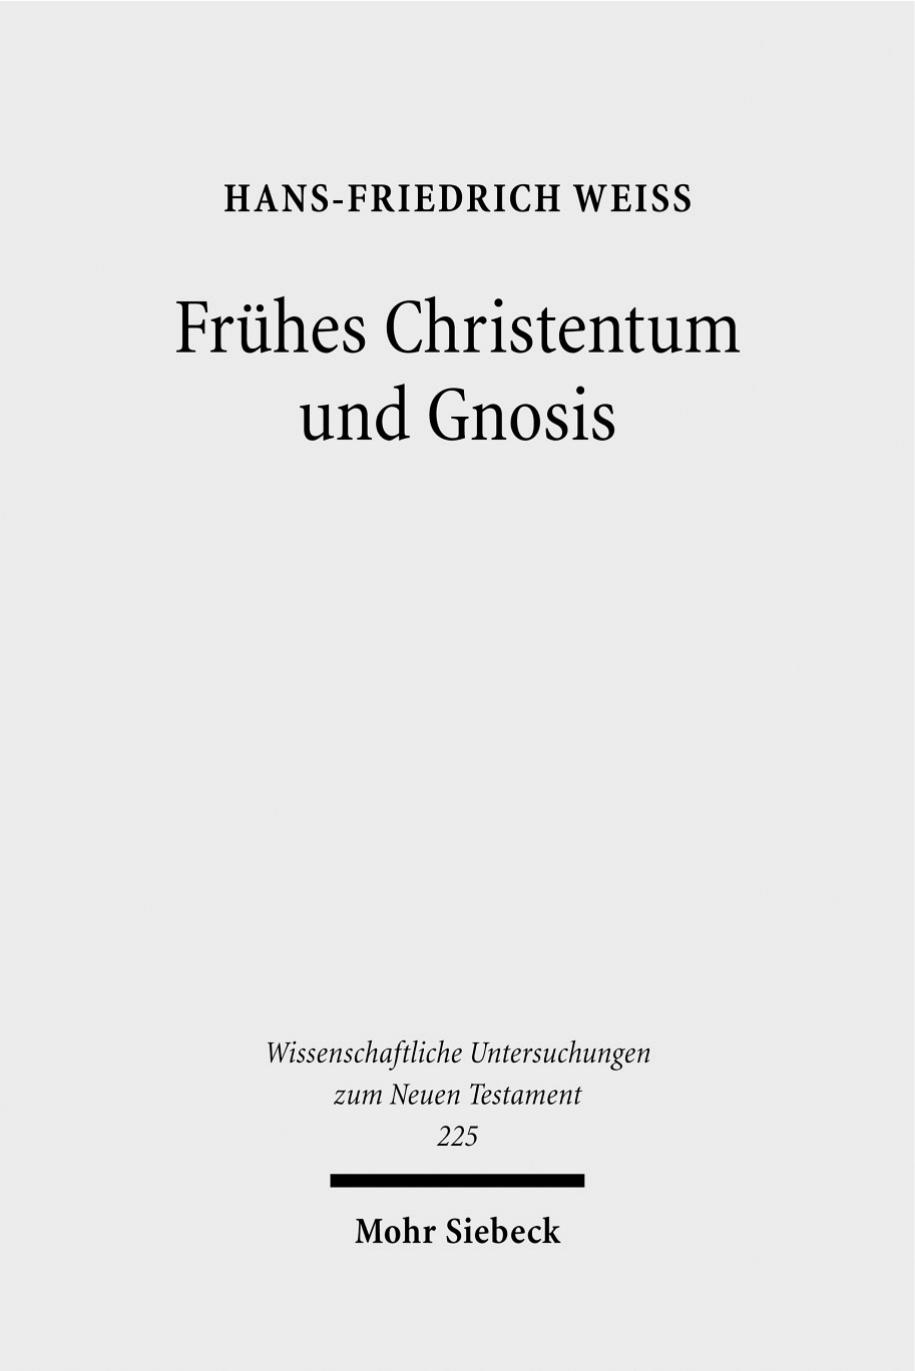 Frühes Christentum und Gnosis: eine rezeptionsgeschichtliche Studie